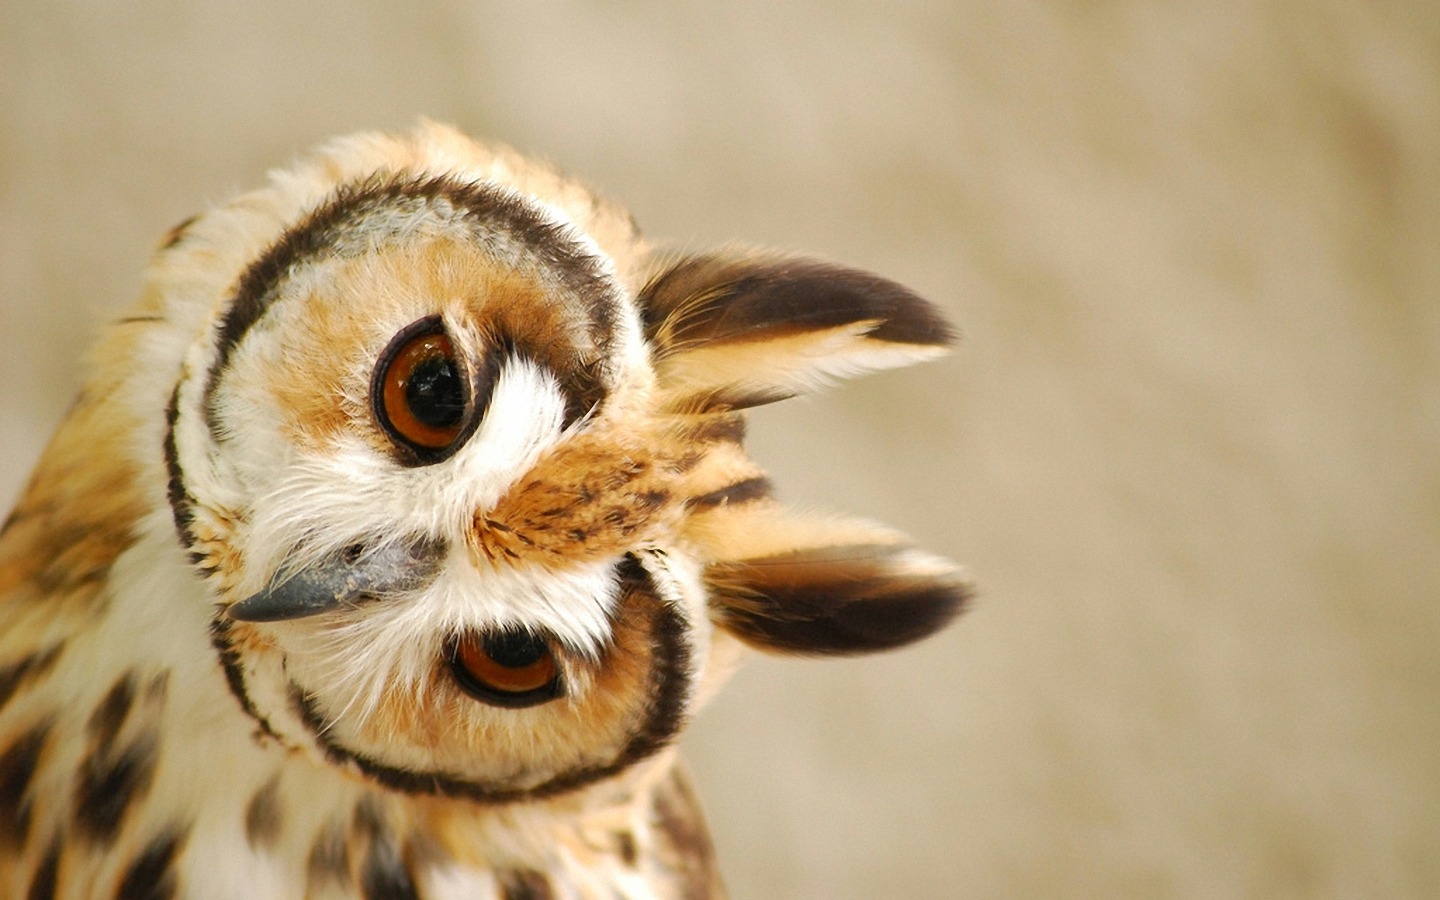 [73+] Cute Owl Wallpaper on WallpaperSafari